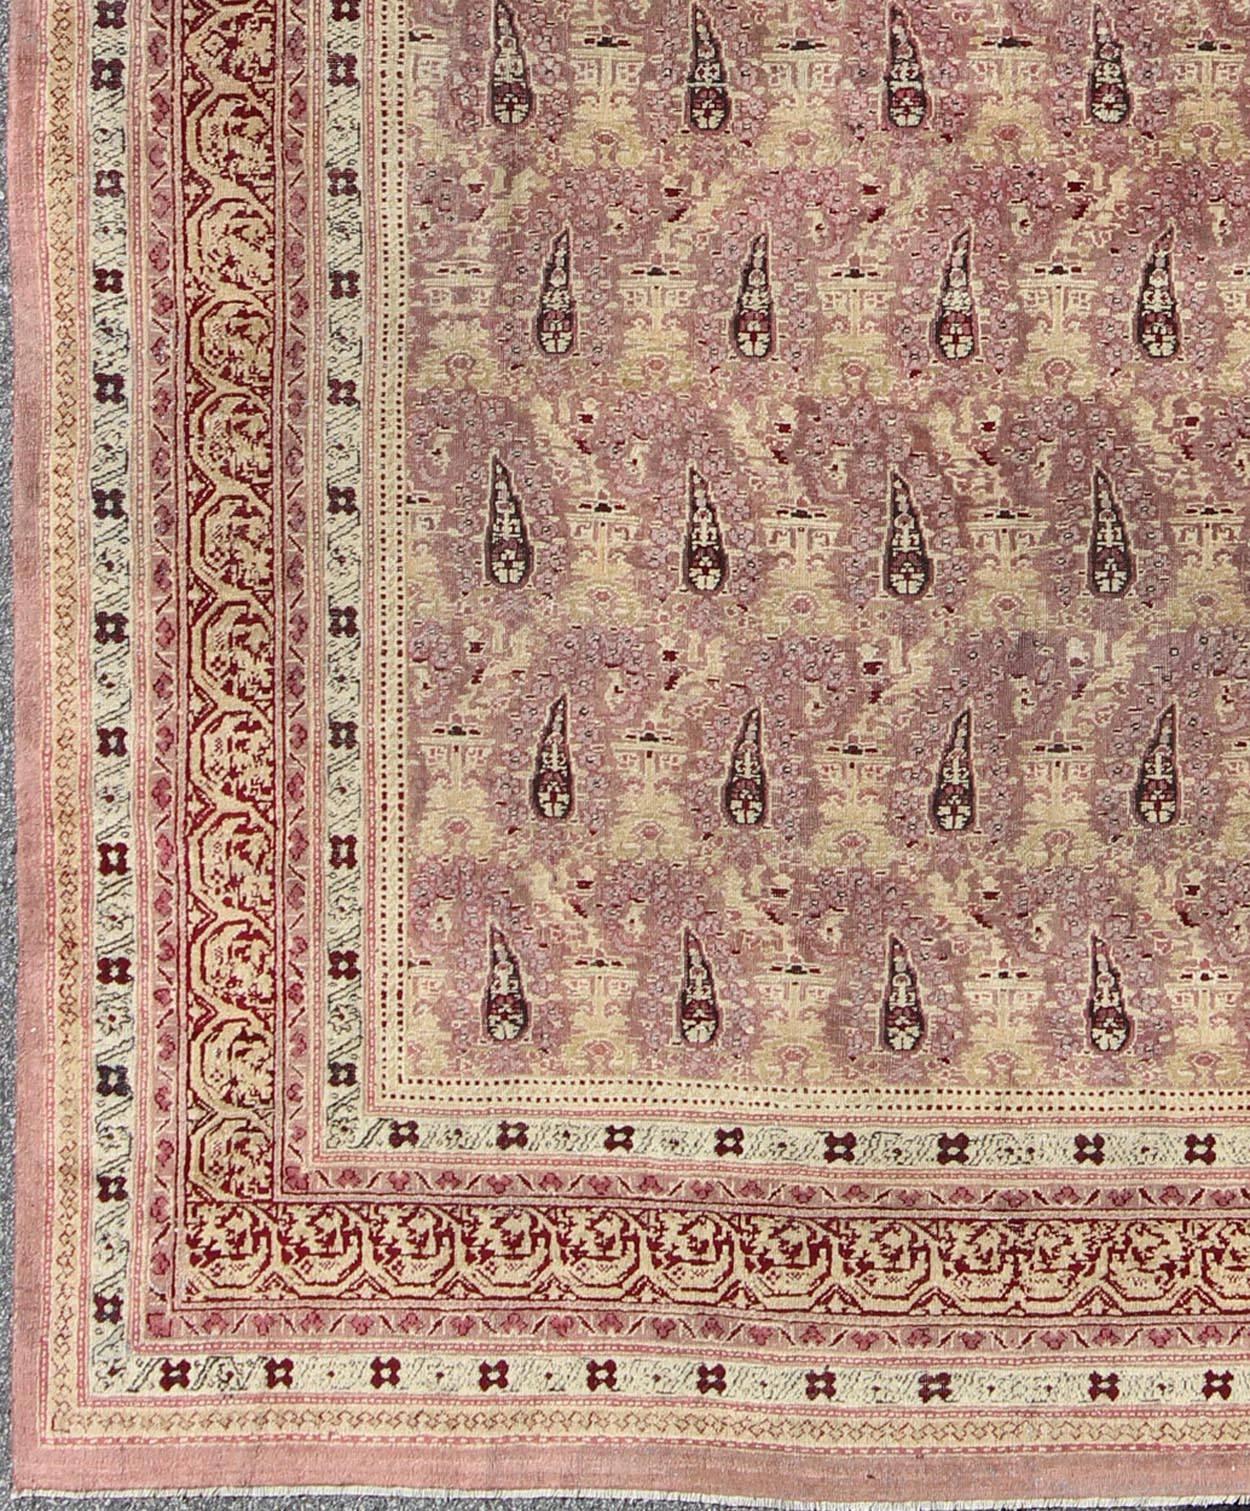  Ancien tapis indien Amritsar avec  Motif Paisley en ivoire, rose, lavande, violet, crème, jaune clair et rouge. Ancien tapis indien Amritsar, Keivan Woven Arts/ tapis/ EBD-1001, pays d'origine / type : Inde / Amritsar, circa 1890

Mesures : 9' x